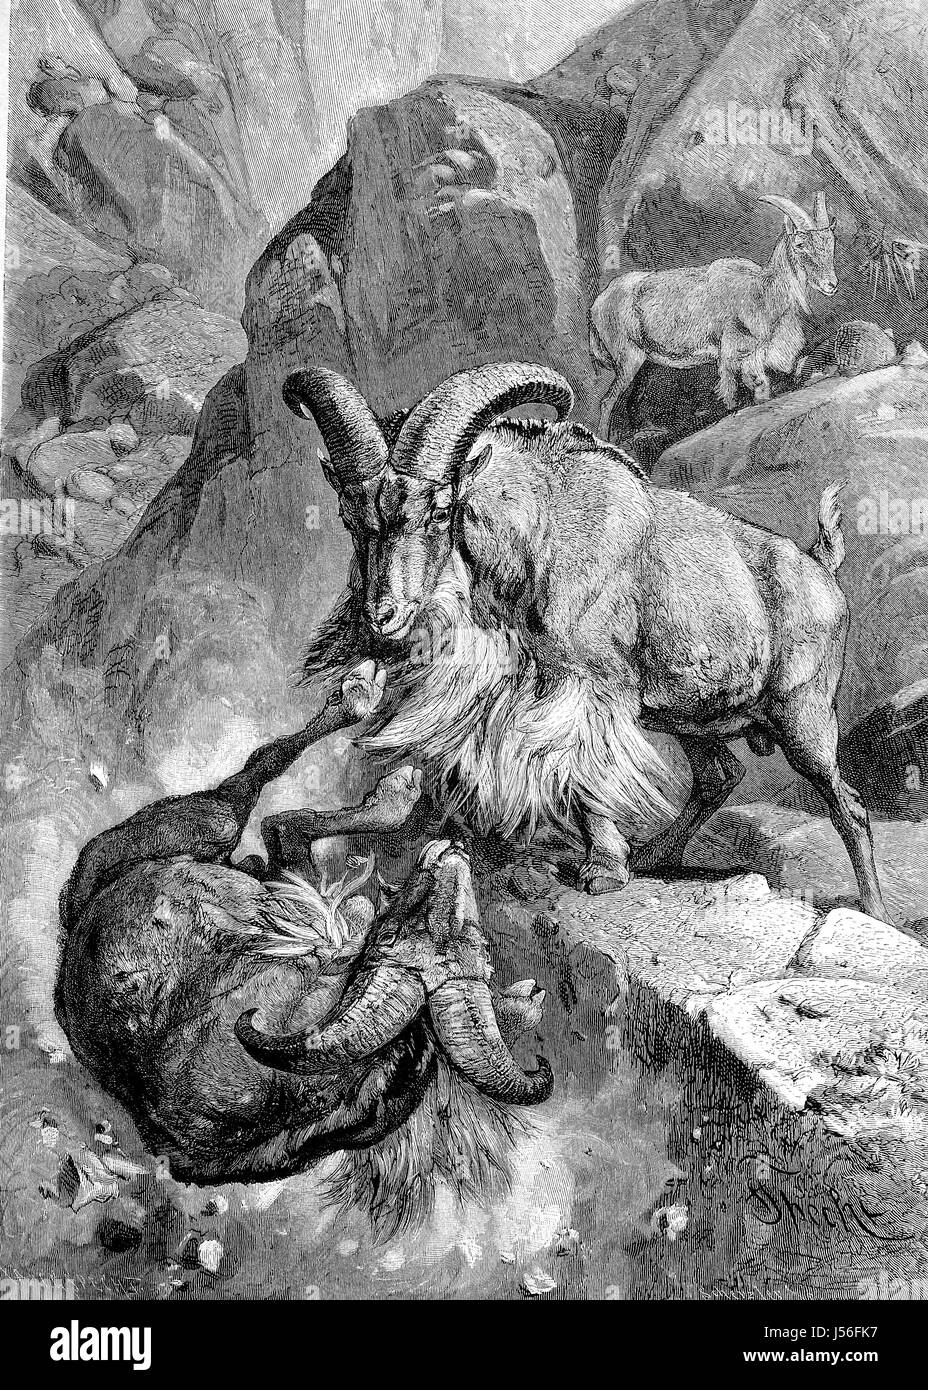 Moutons de barbarie combats, Ammotragus lervia, Maehnenschafe haus Kampf, amélioration numérique reproduction d'une publication de l'année 1880 Banque D'Images